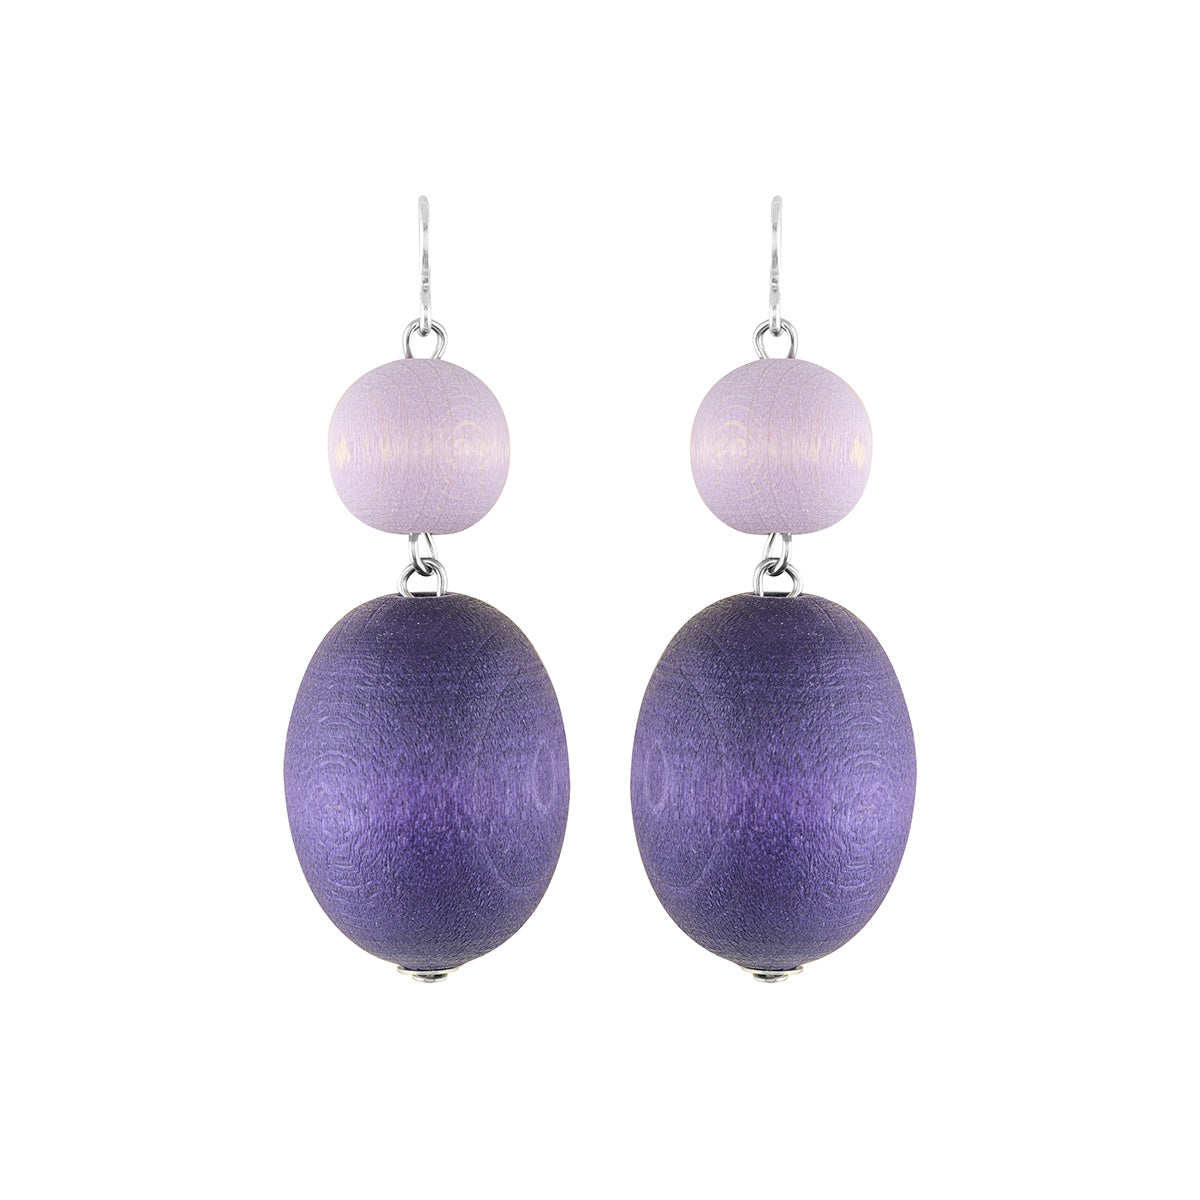 Taateli earrings, dark purple